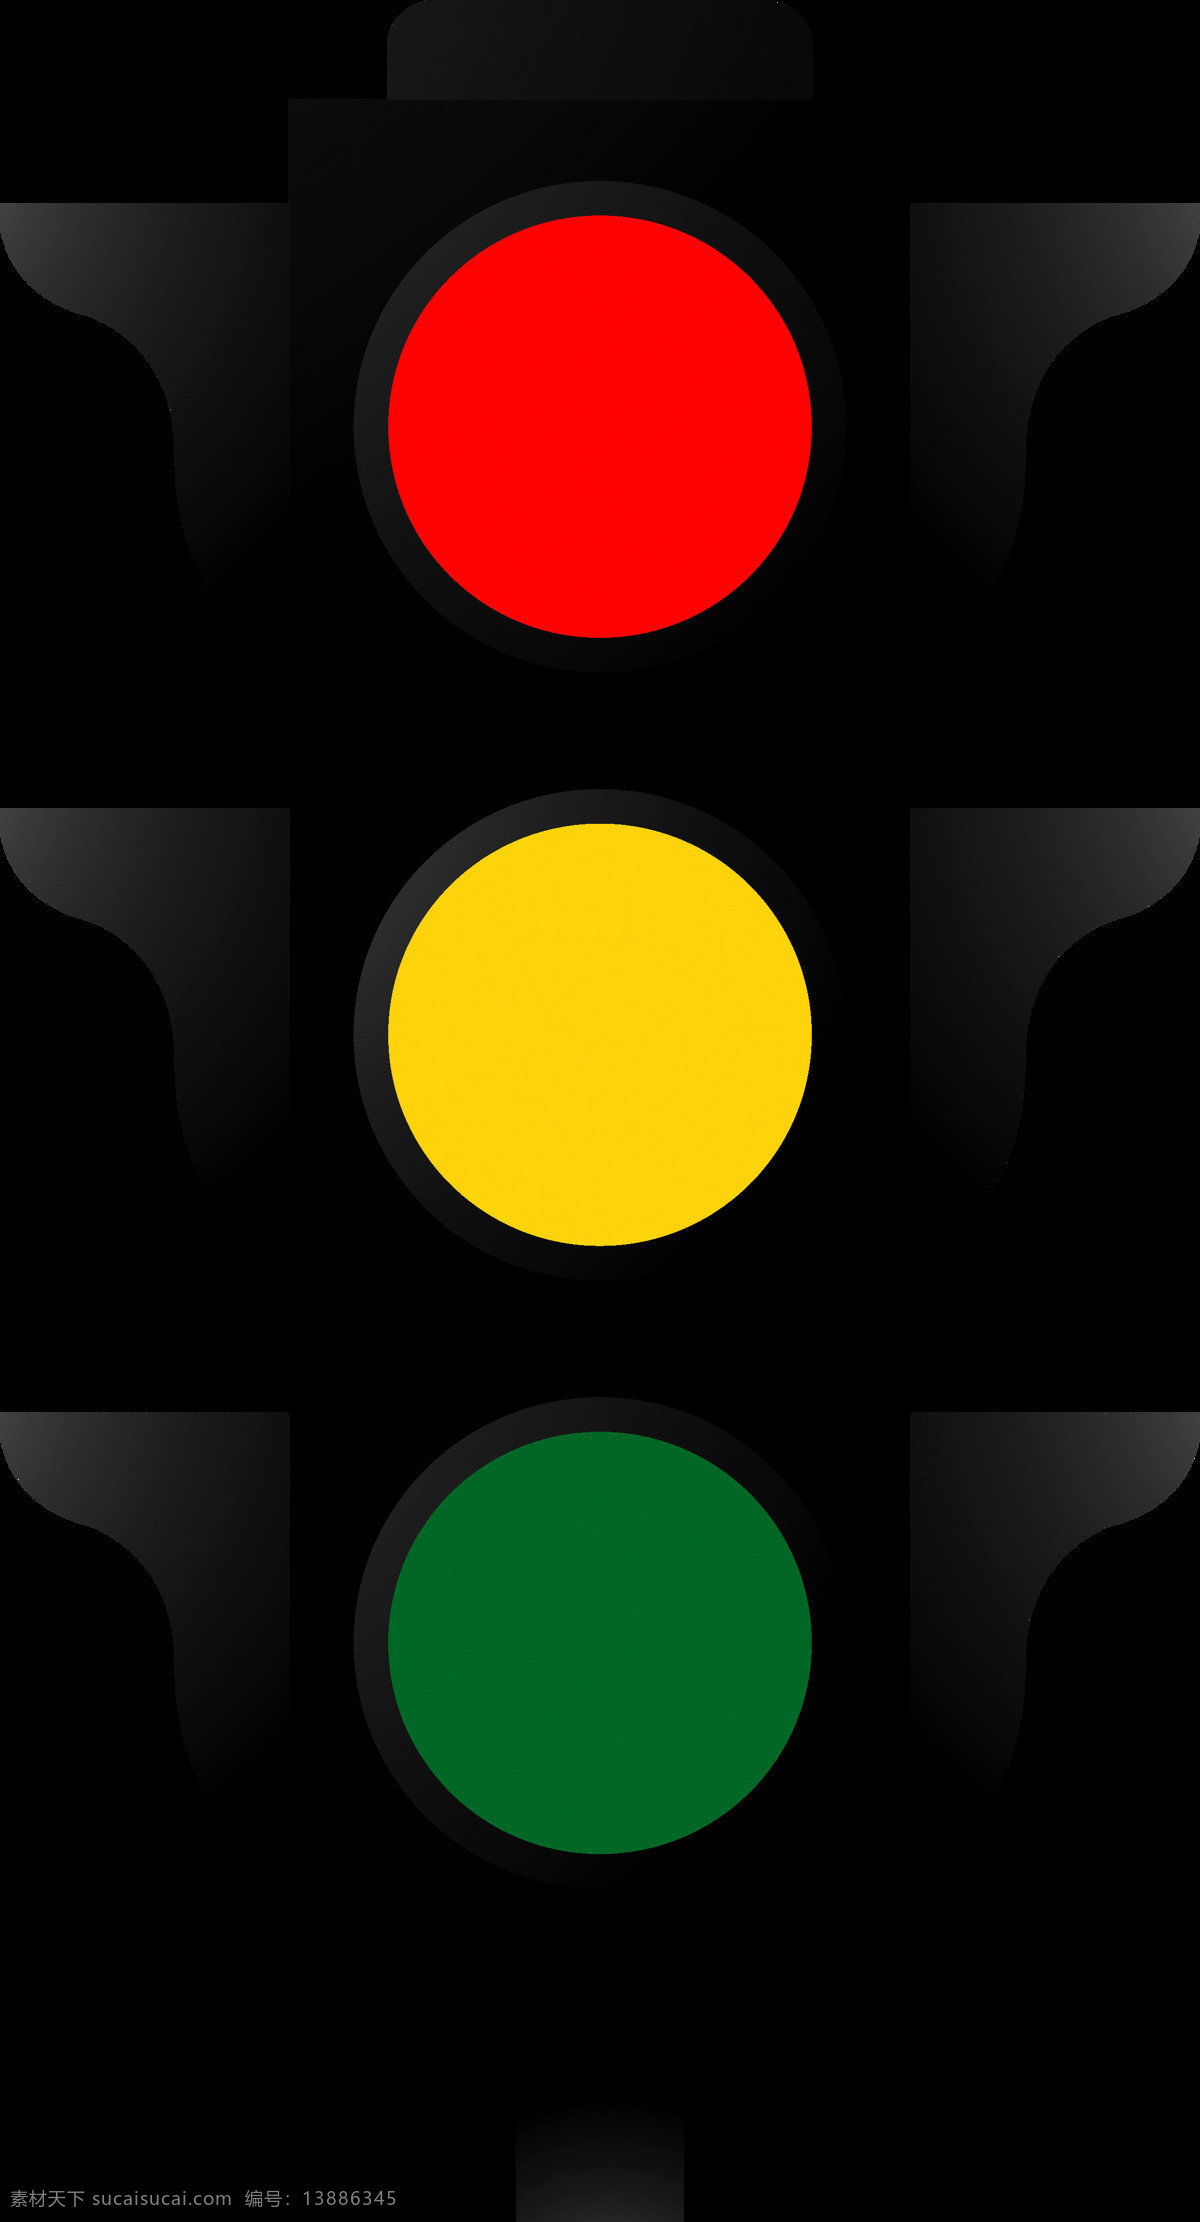 世界 交通安全 日红 绿灯 信号 元素 设计素材 日 交通信号灯 红绿灯 过马路 卡通红绿灯 信号灯